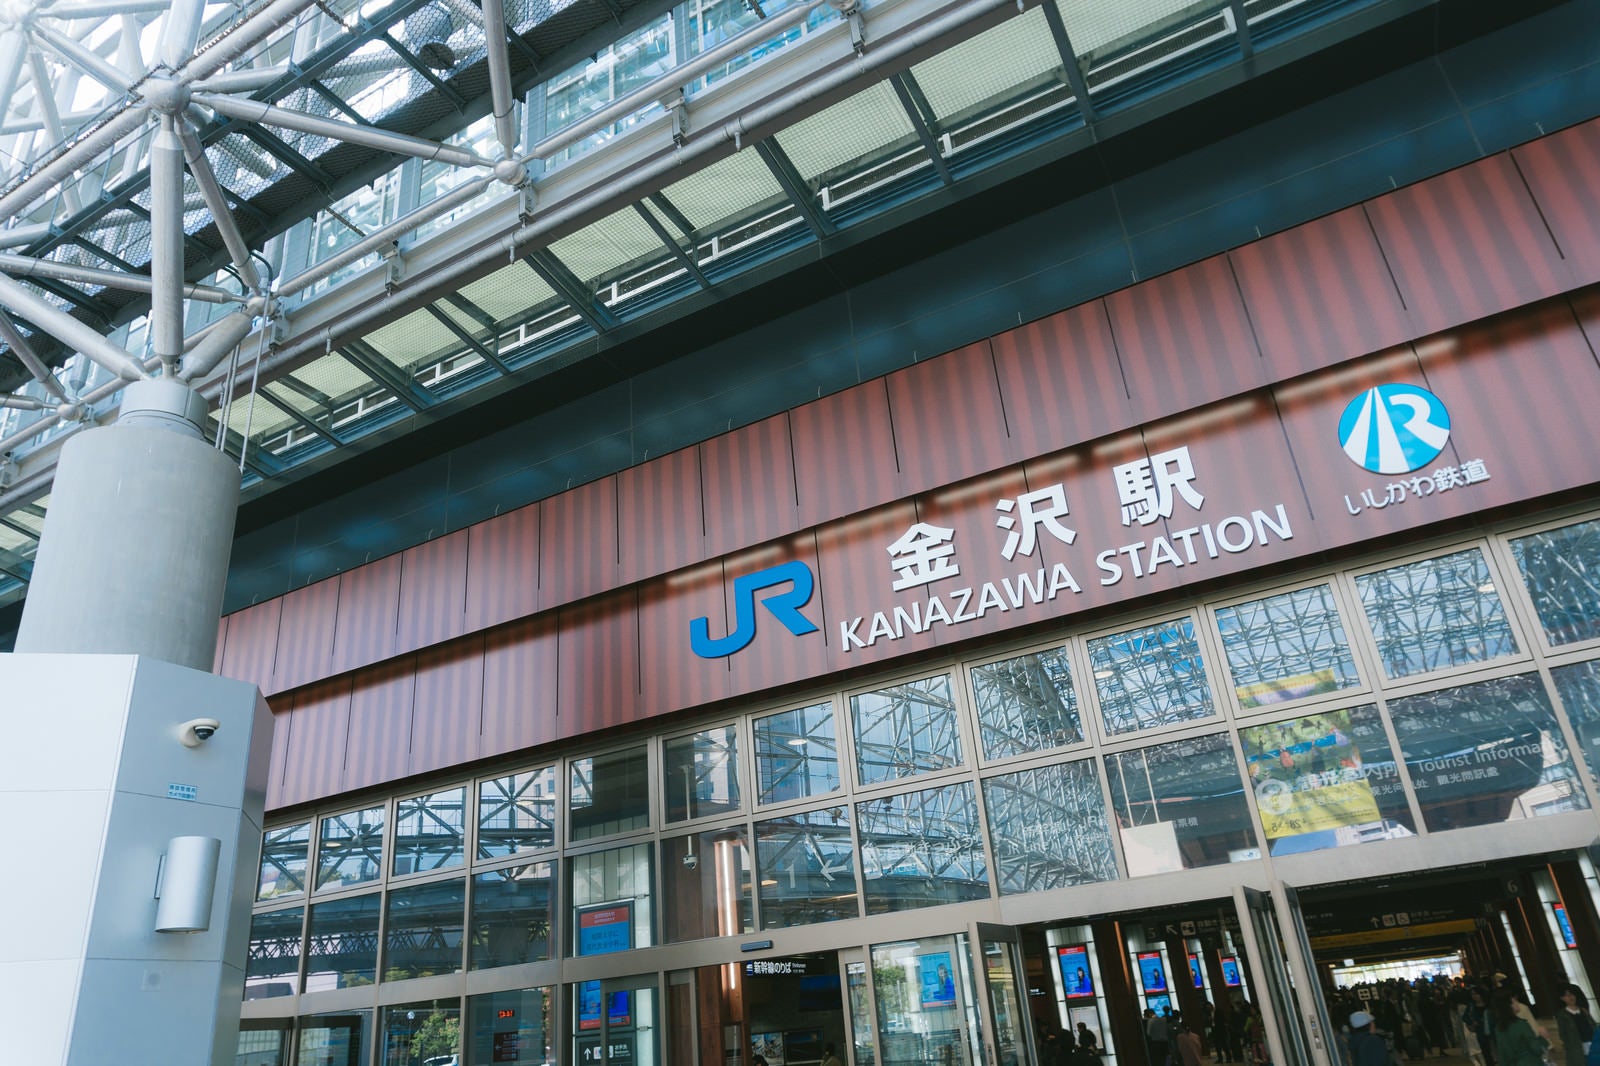 「JR金沢駅」の写真